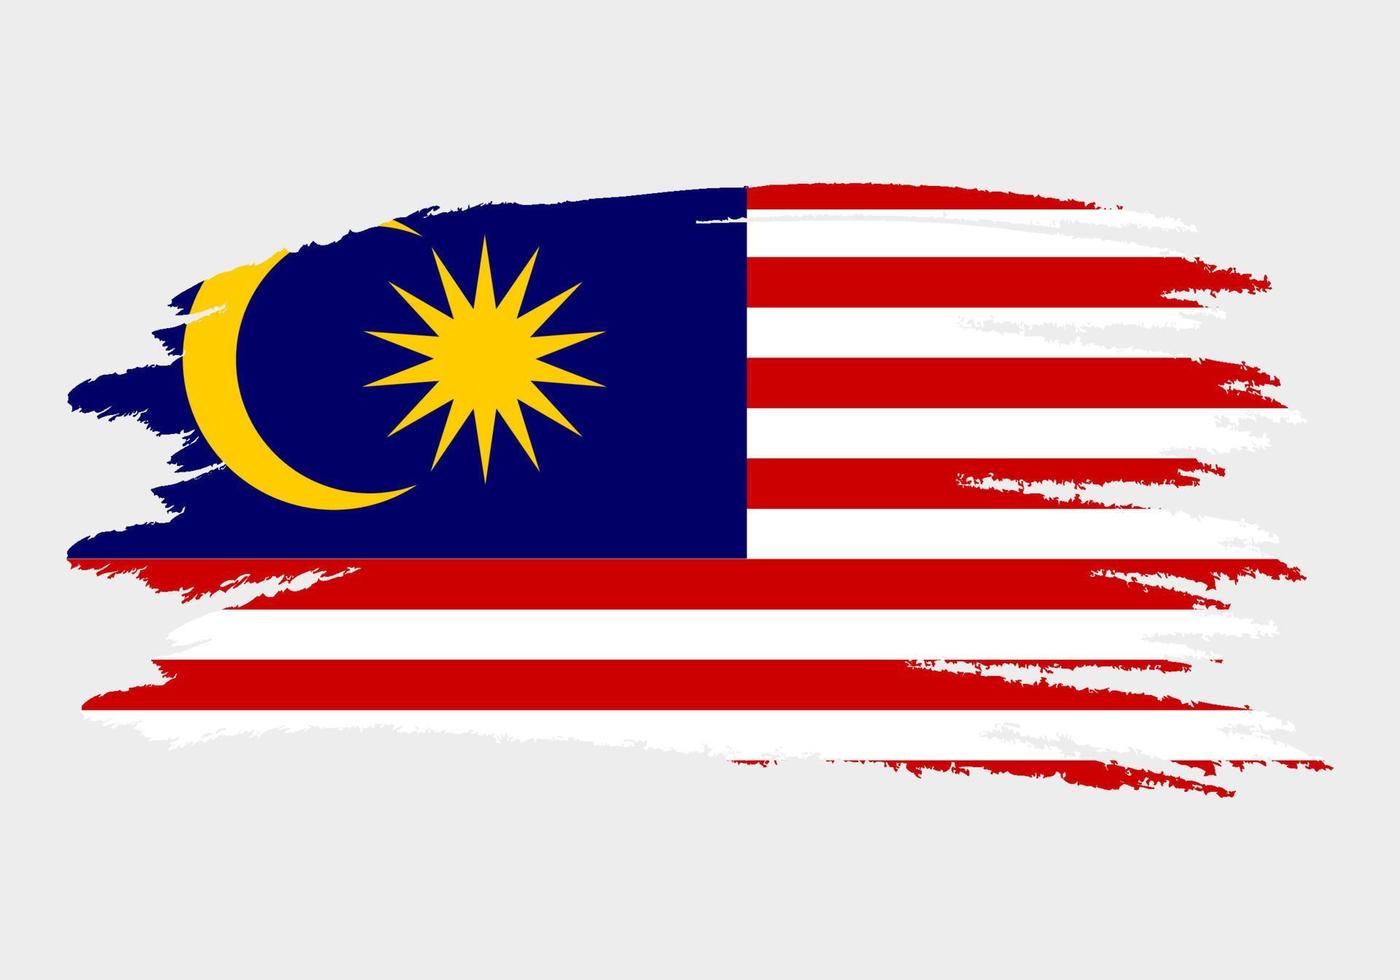 drapeau de la malaisie. drapeau peint à la brosse de la malaisie. illustration de style dessiné à la main avec un effet grunge et aquarelle. drapeau de la malaisie avec texture grunge. illustration vectorielle. vecteur